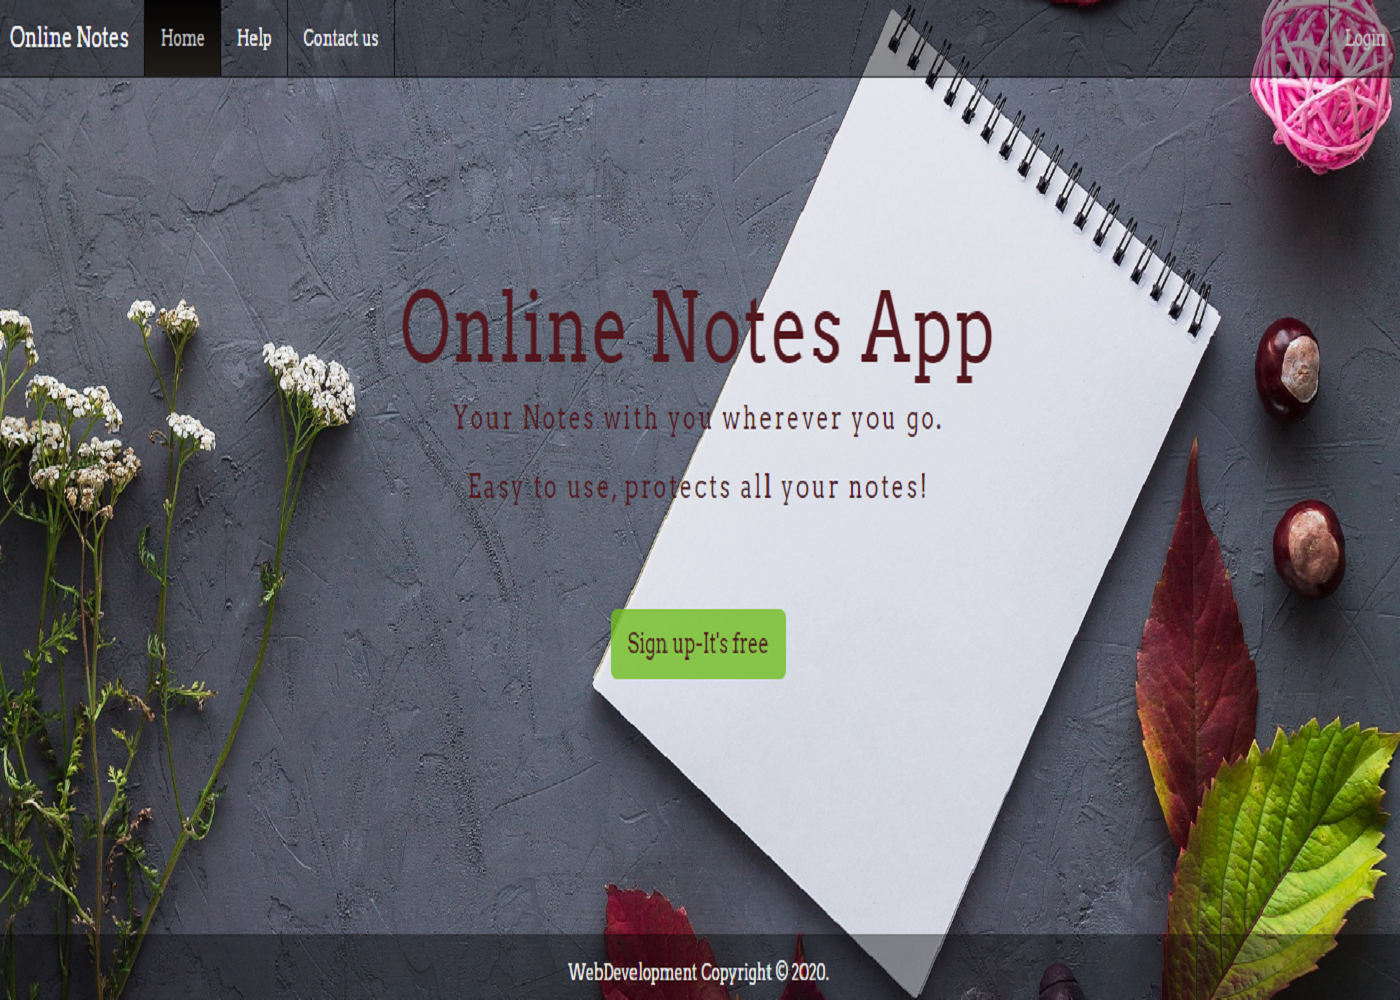 Onlinenotes app